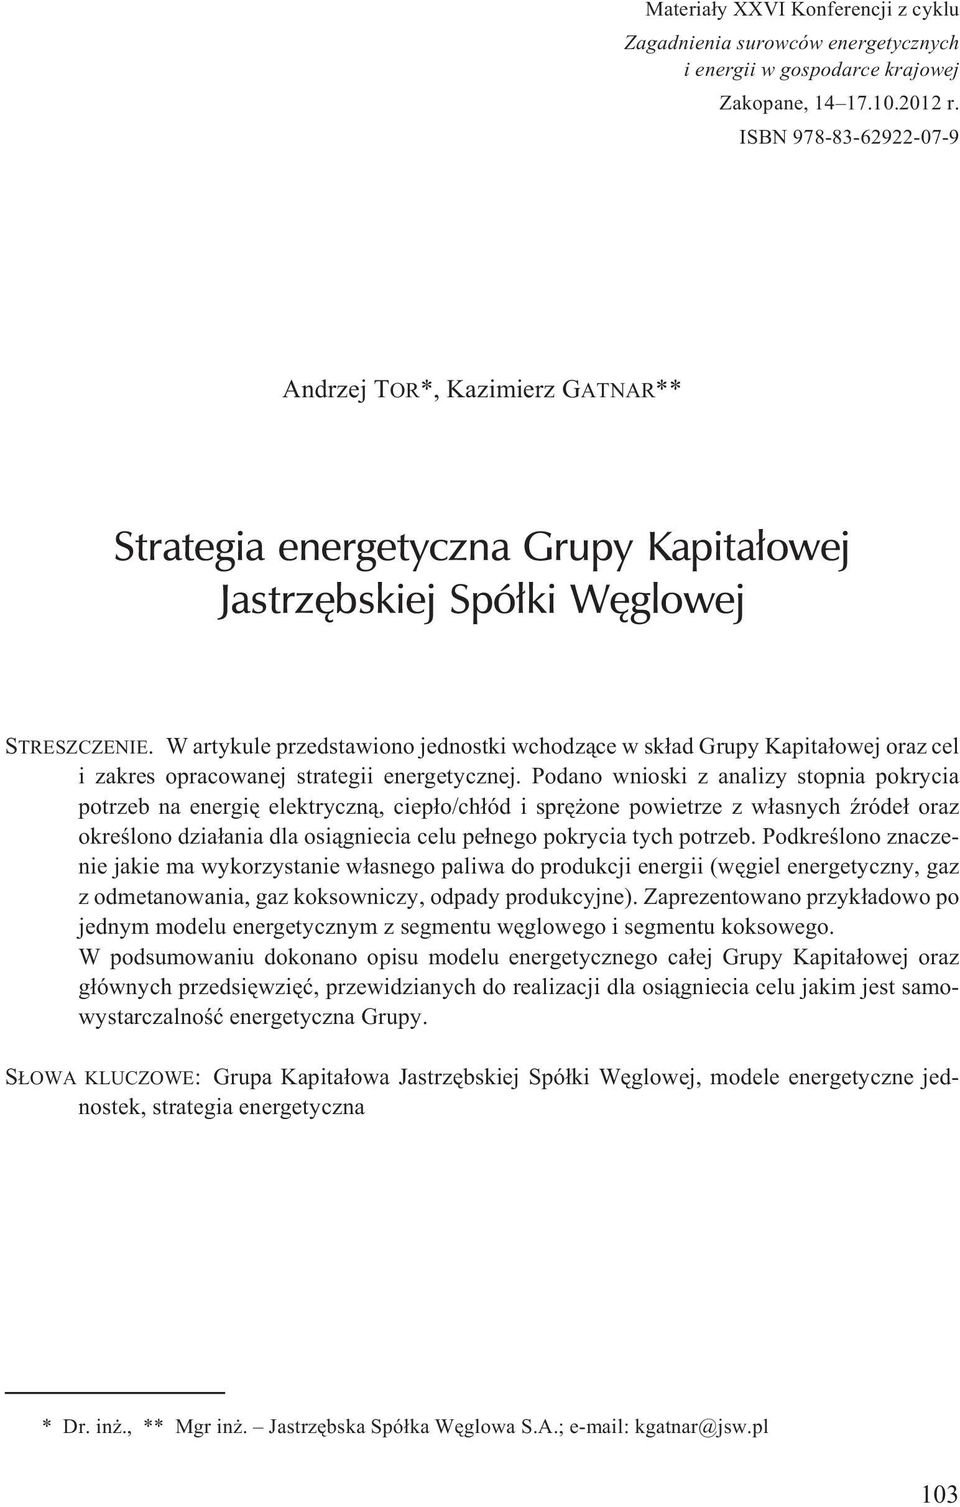 W artykule przedstawiono jednostki wchodz¹ce w sk³ad Grupy Kapita³owej oraz cel i zakres opracowanej strategii energetycznej.